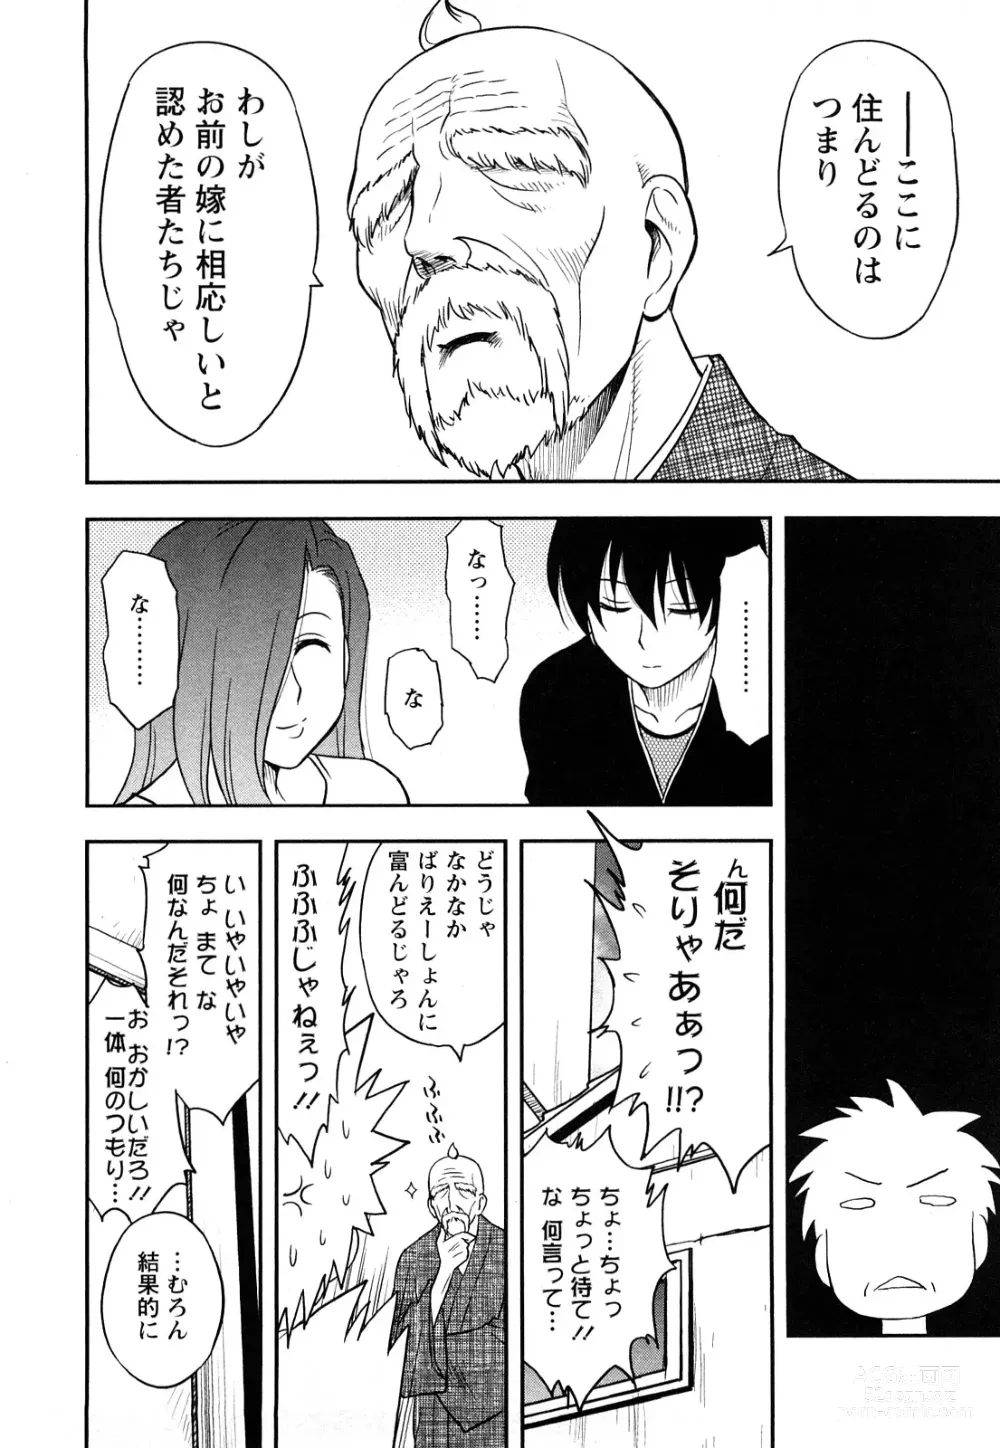 Page 188 of manga Megamisou Panic!